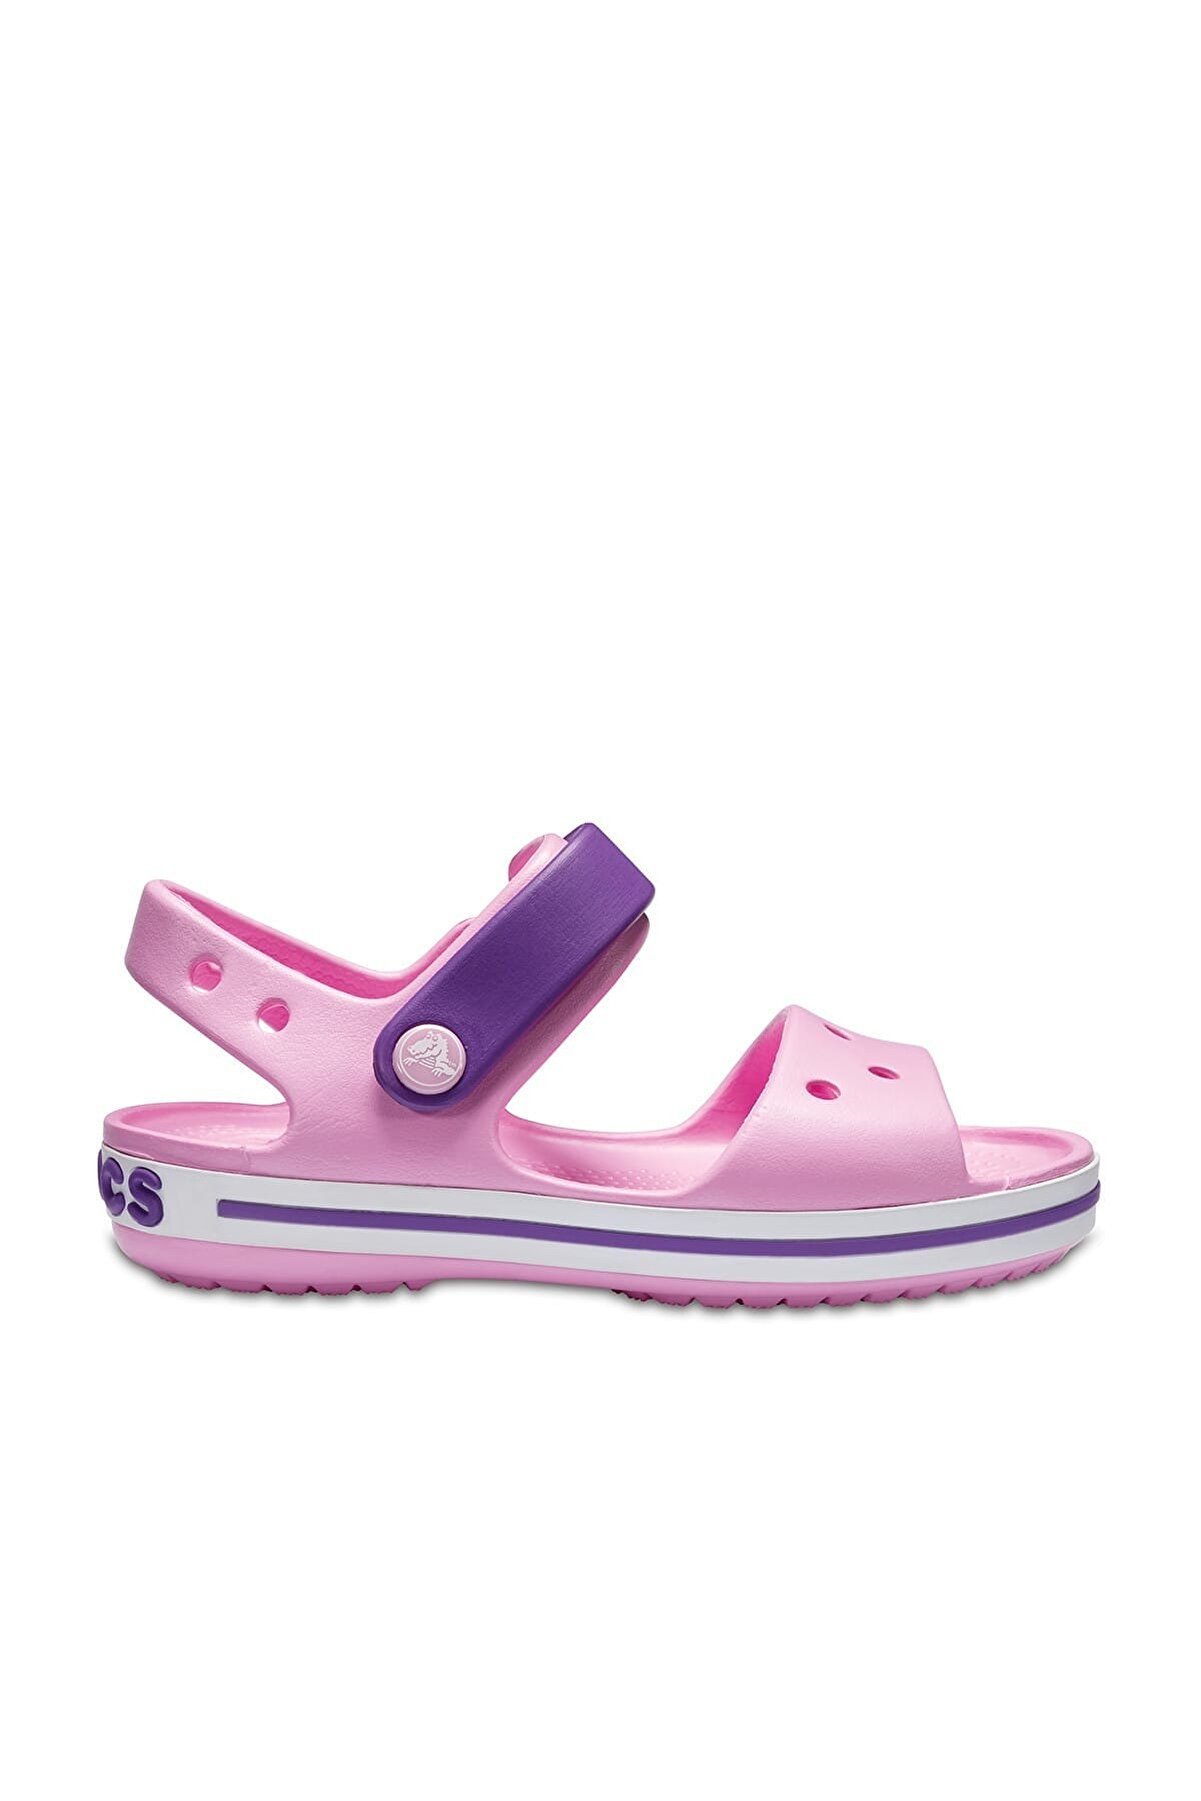 Crocs Pembe Kız Çocuk Sandalet